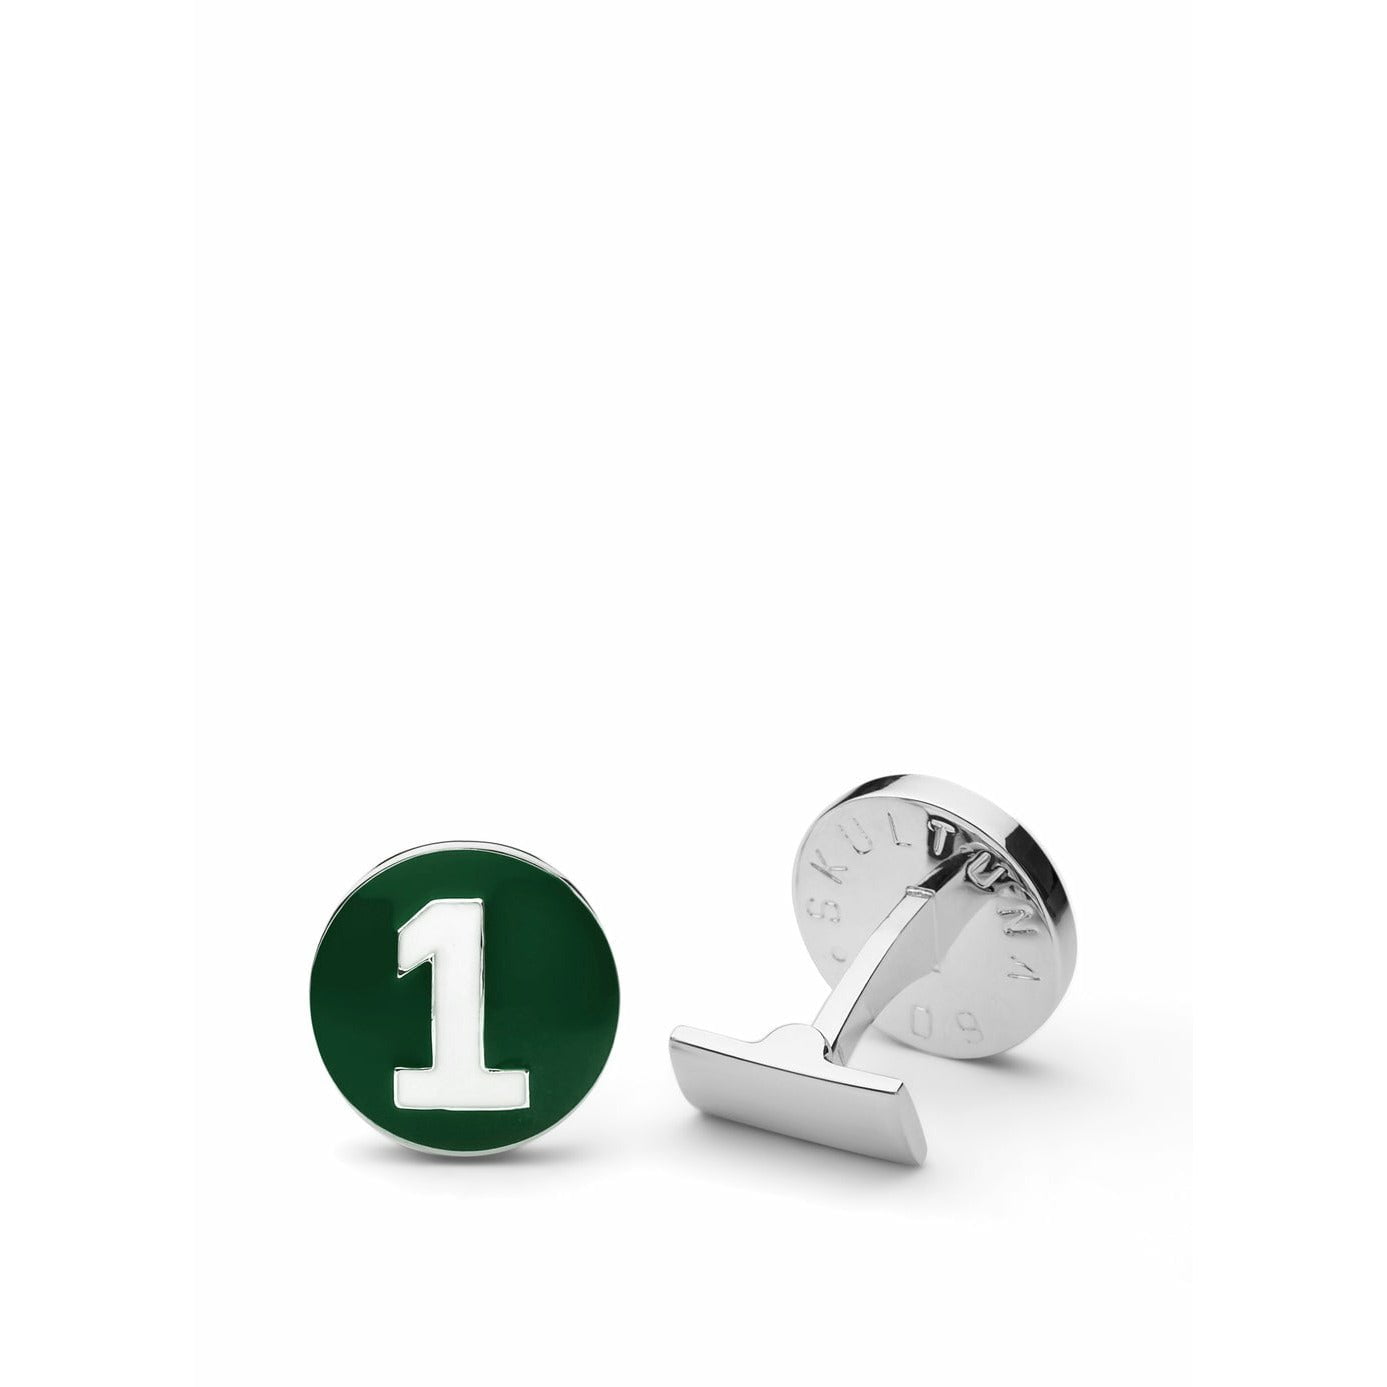 Skultuna Le bouton de mancheur de coureur Ø1,7 cm, vert / blanc